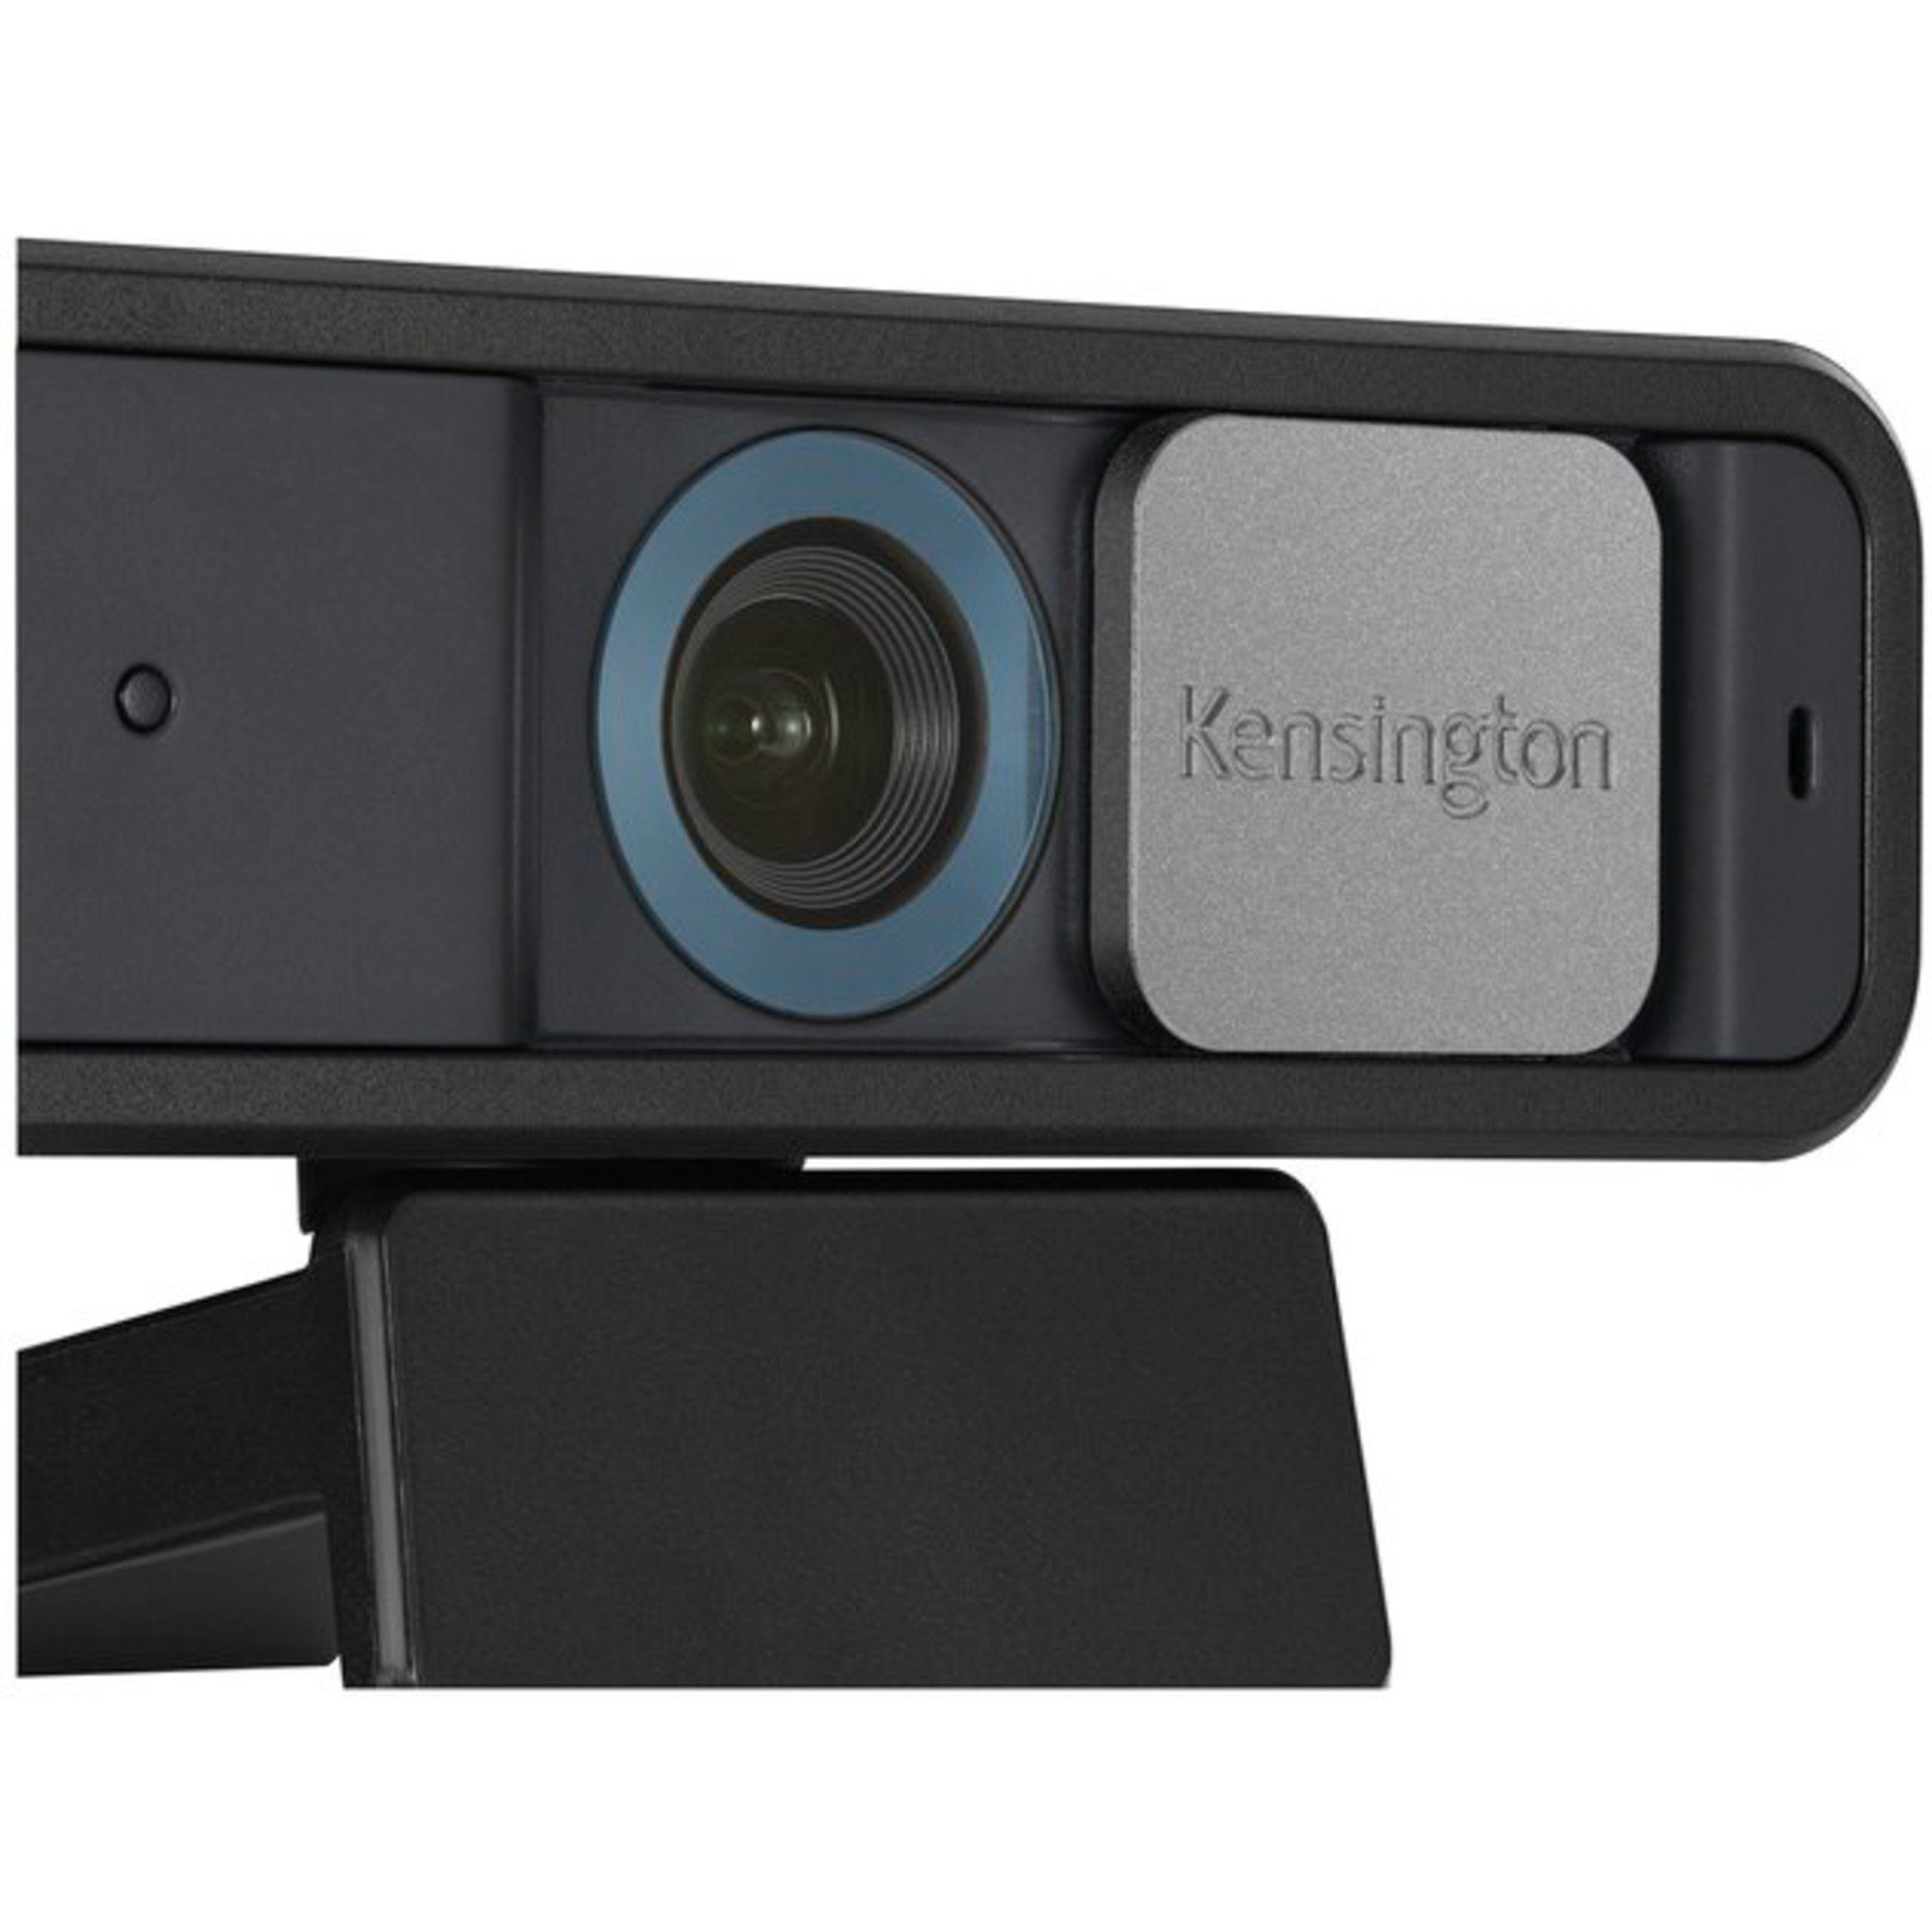 Auto Focus, Kensington 1080p Webcam KENSINGTON W2050 Pro Webcam